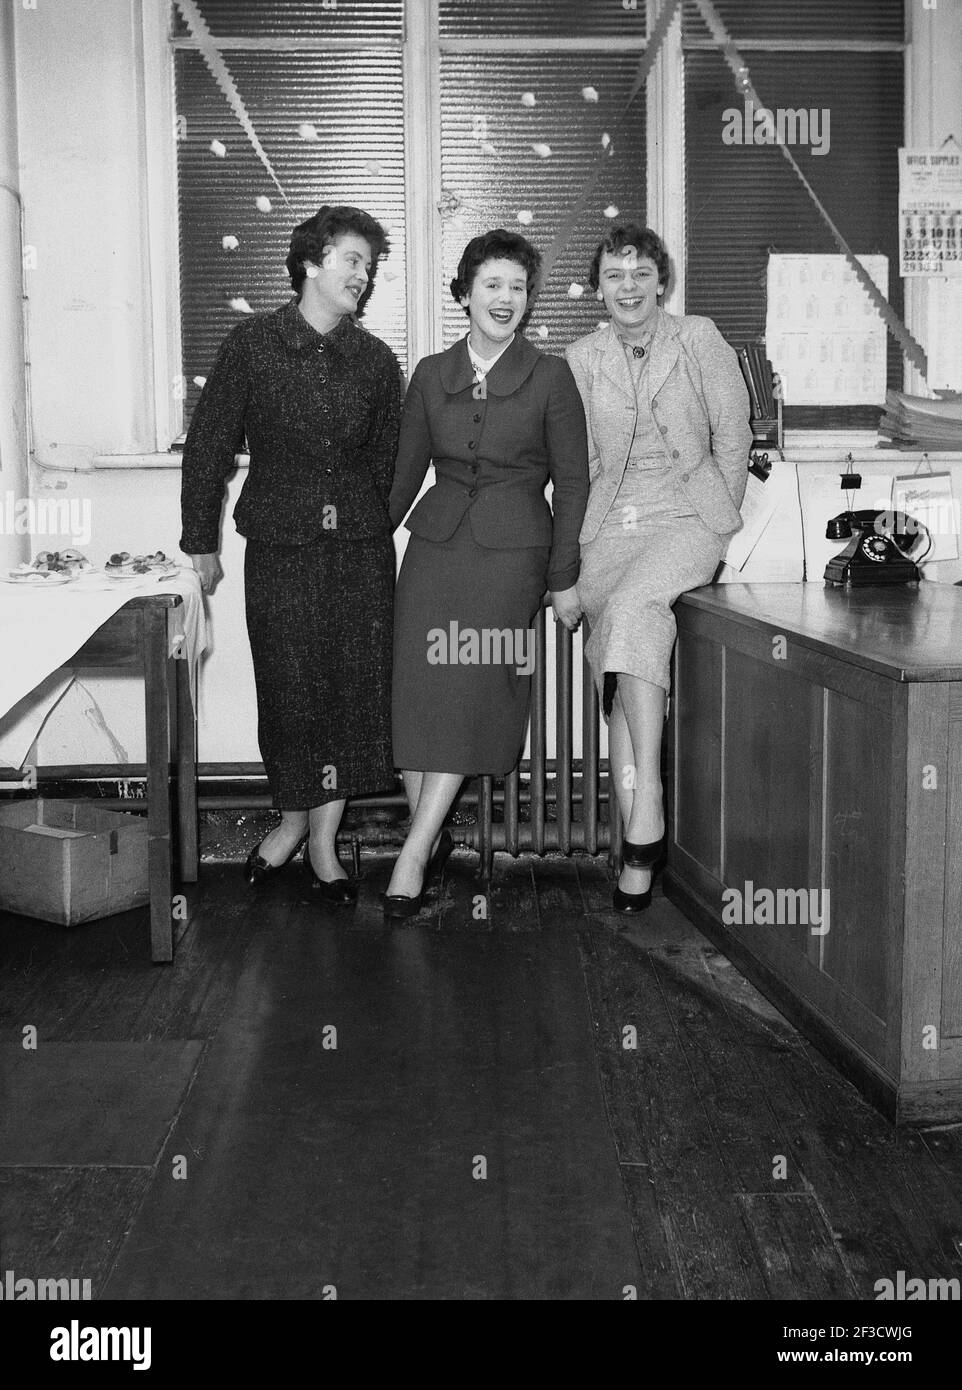 1950s, historisch, drei junge Damen des Schreibpools, die zusammen für ihr Bild stehen und lachen, bei der Hepworths Bekleidungsfirma, Clay Pit Lane, Leeds, England, UK, Tragen Sie die stilvollen femininen Outfits der Ära. Stockfoto